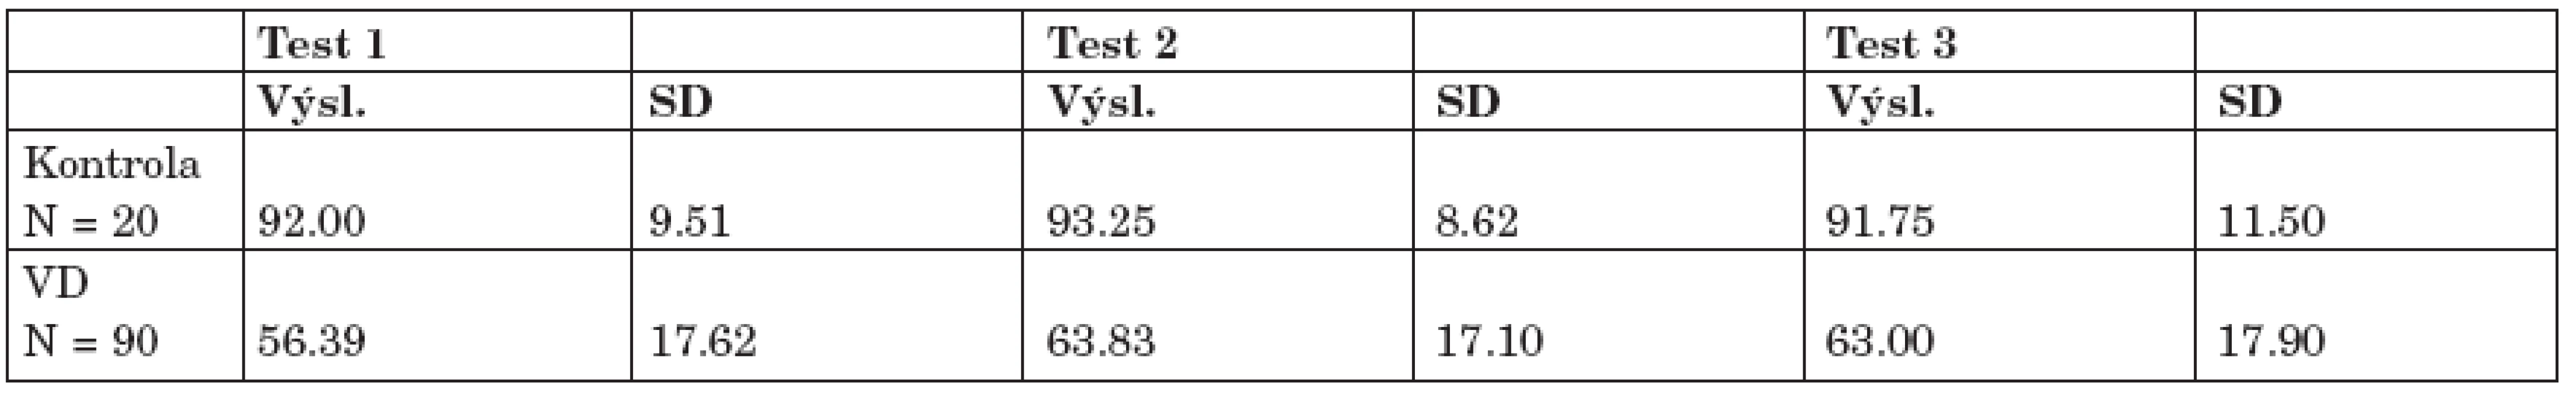 Výsledky dichotických testů (č. 1-3) u 6-7letých dětí s vývojovou dysfázií (VD). Statistické vyhodnocení (párový t-test) - výsledky v procentech (p&lt;0,001).